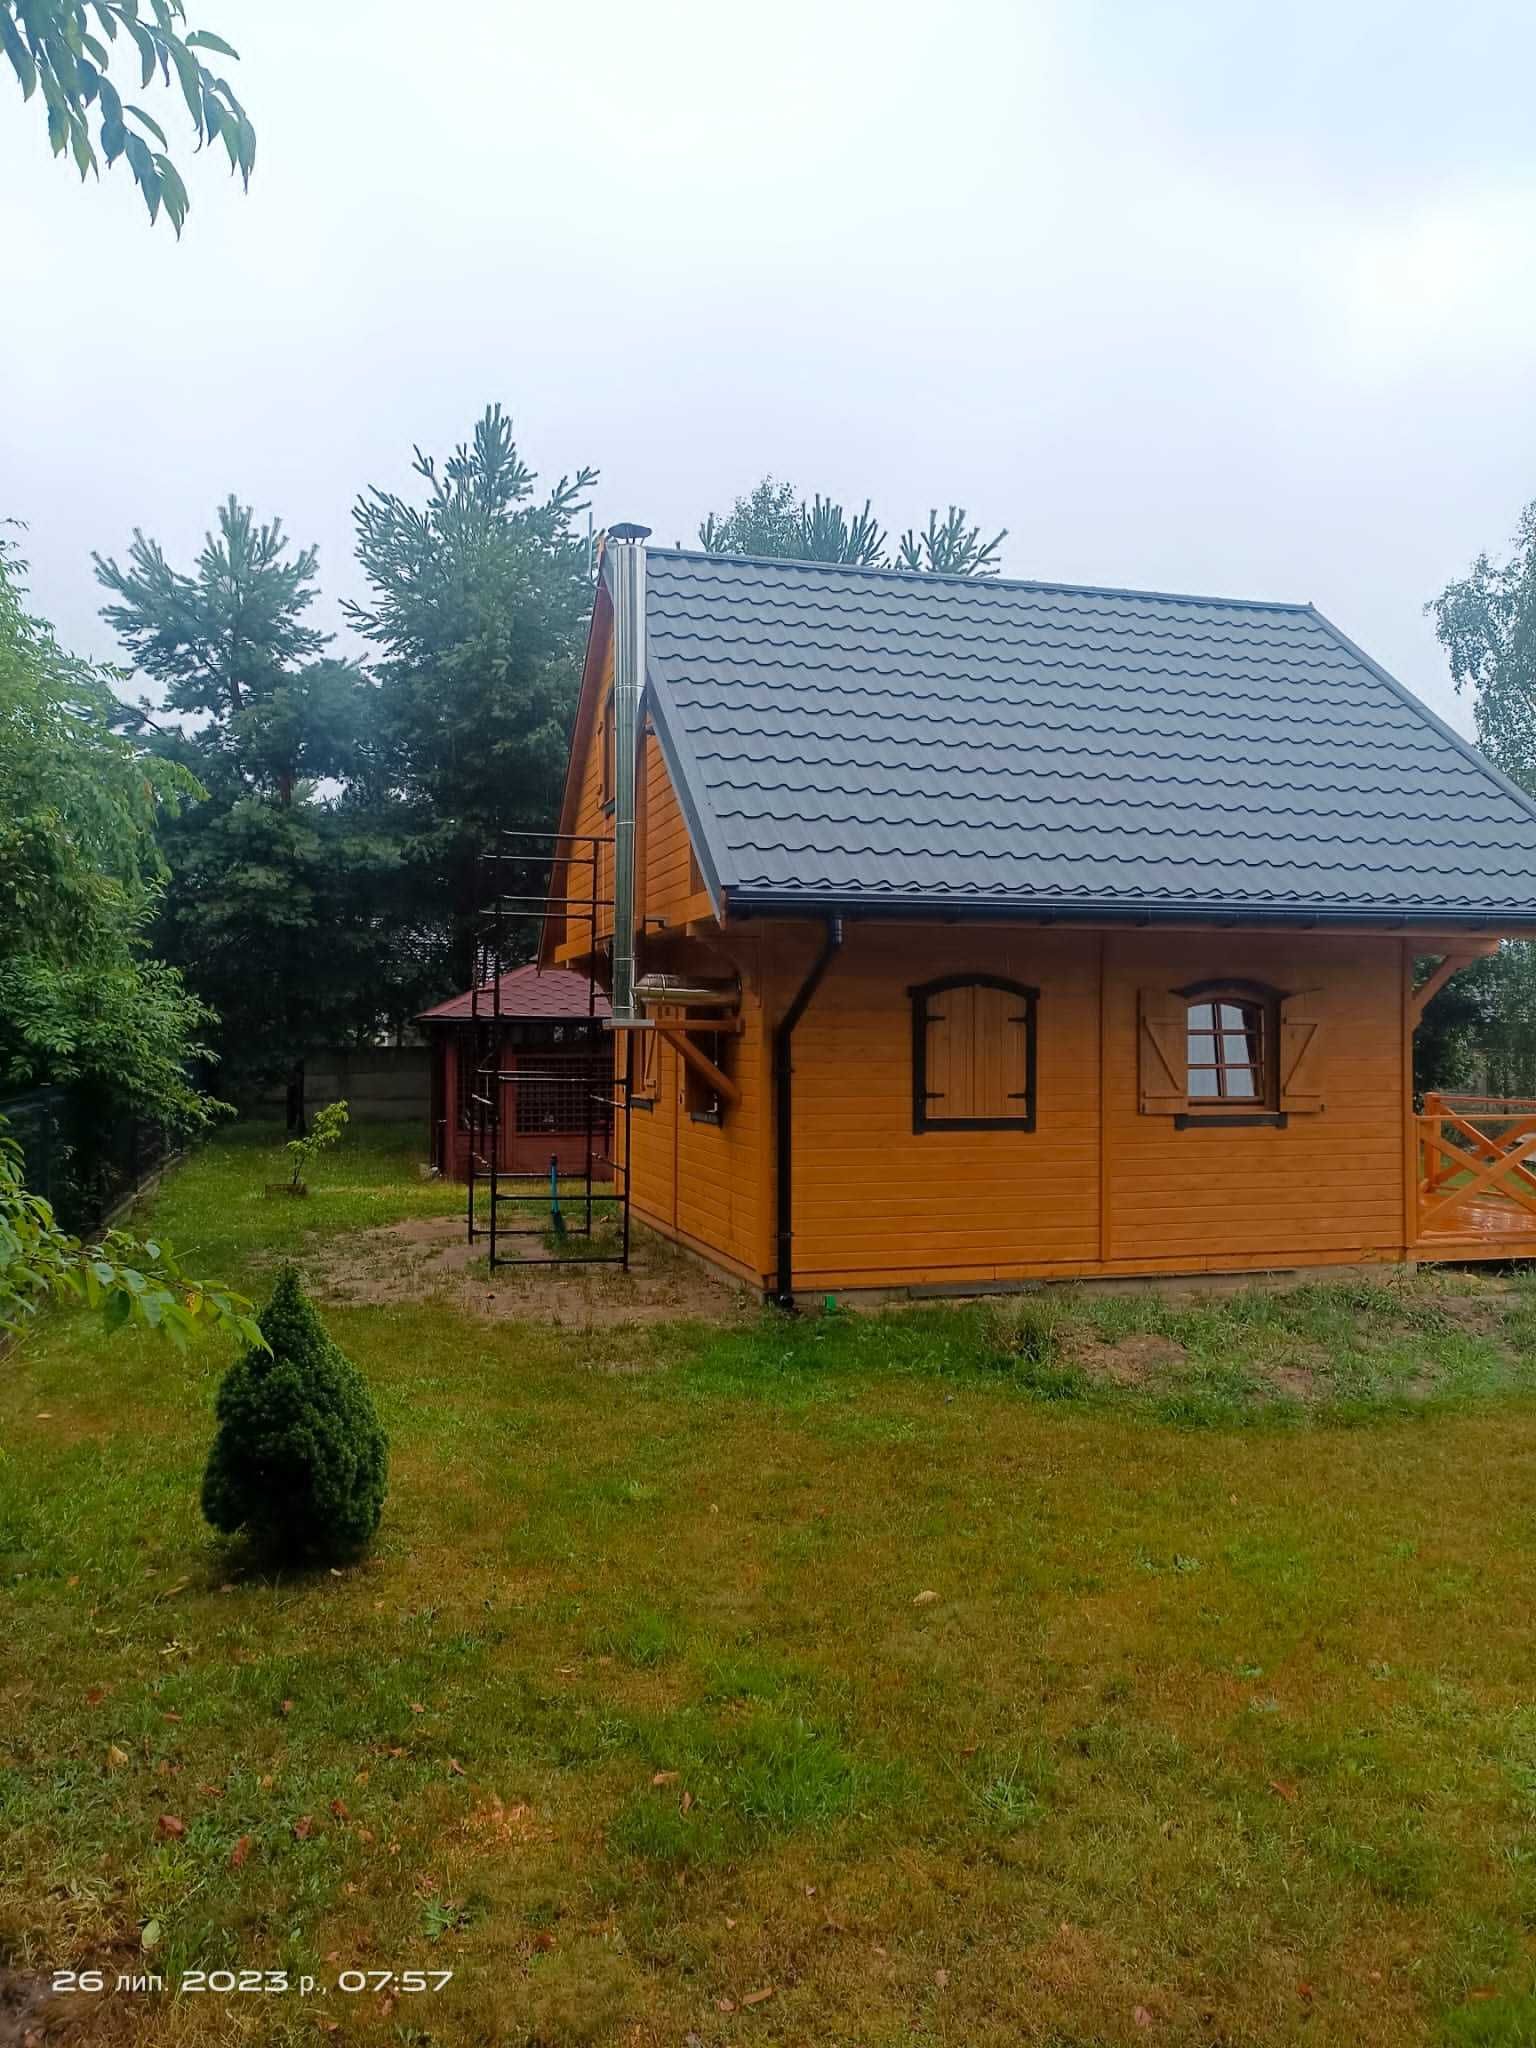 Dom drewinany letniskowy Grzybek 5x5m +3m taras do 35m2